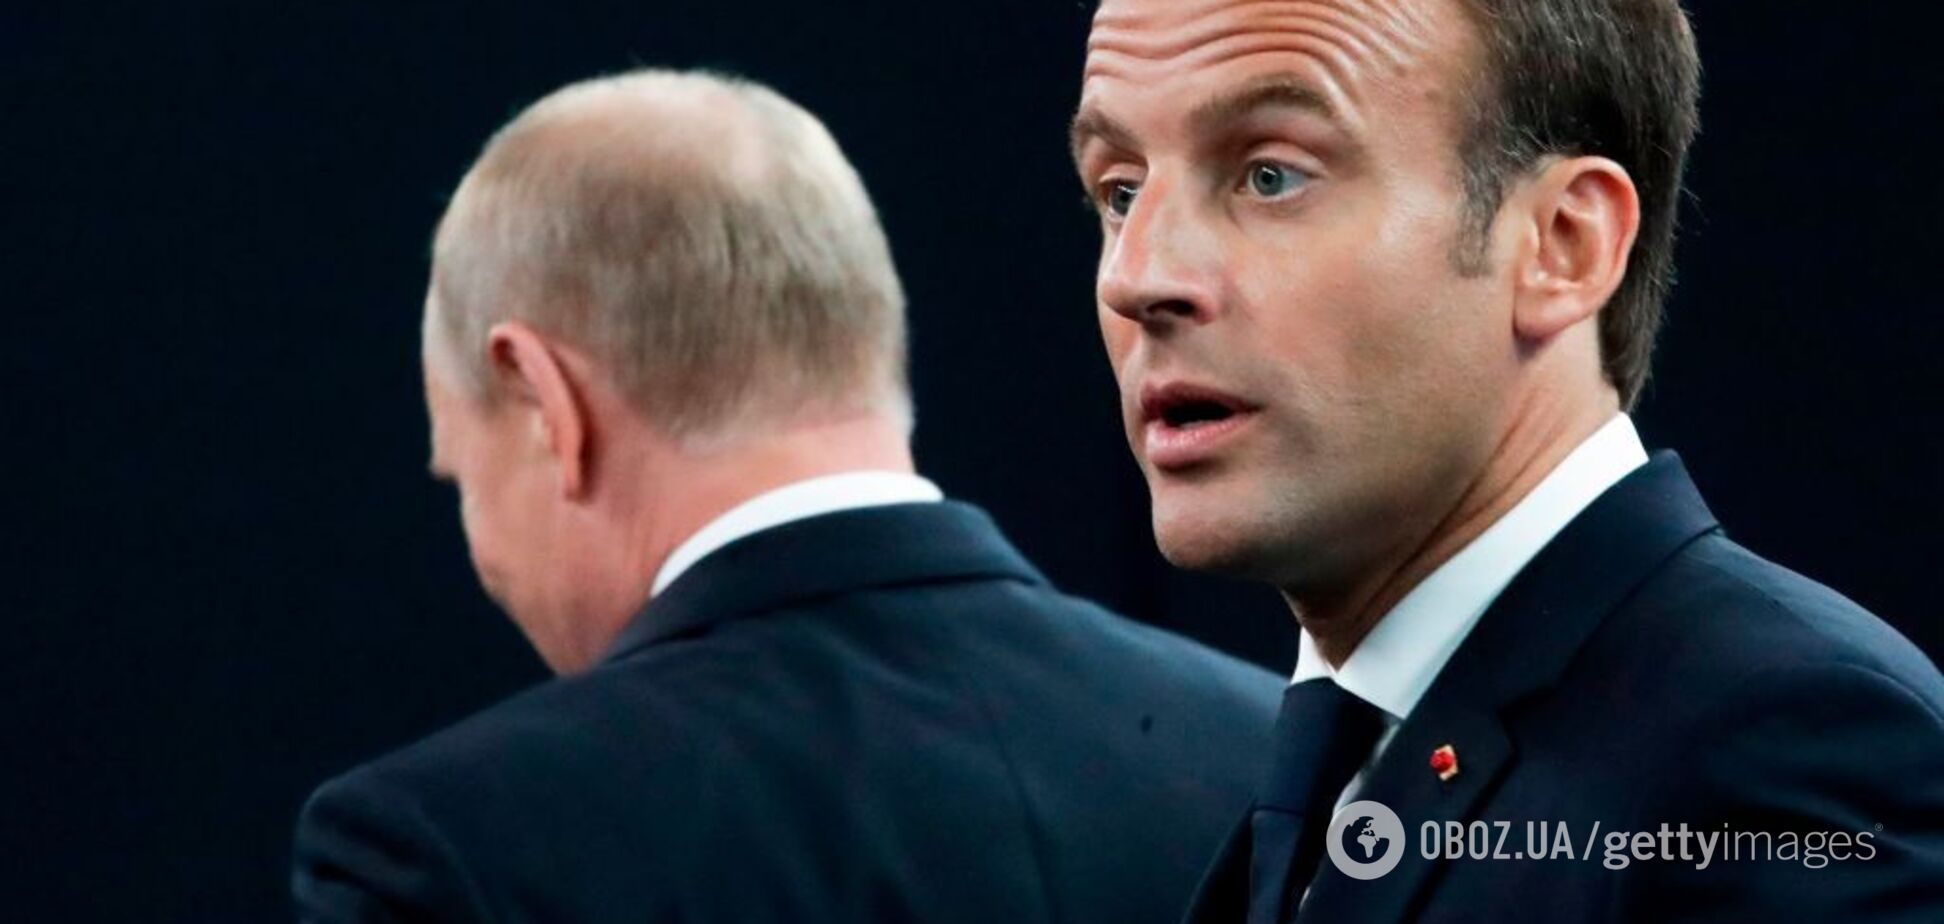 Макрон проведет переговоры с Путиным в Москве: президент Франции заговорил об 'историческом решении'